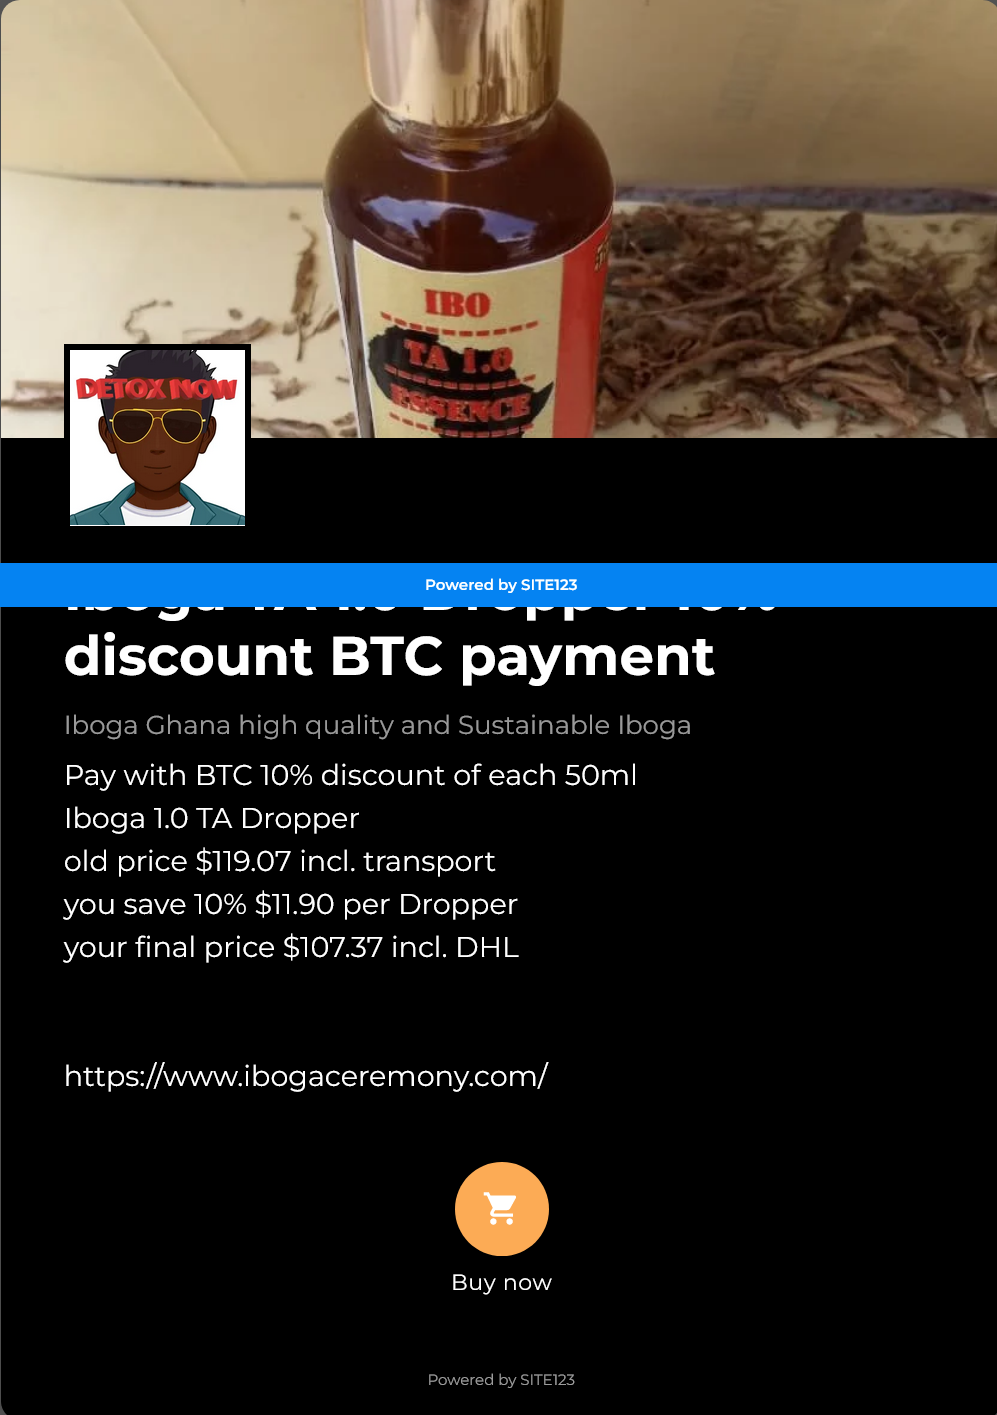 Iboga TA 1.0 Dropper 10% discount BTC payment